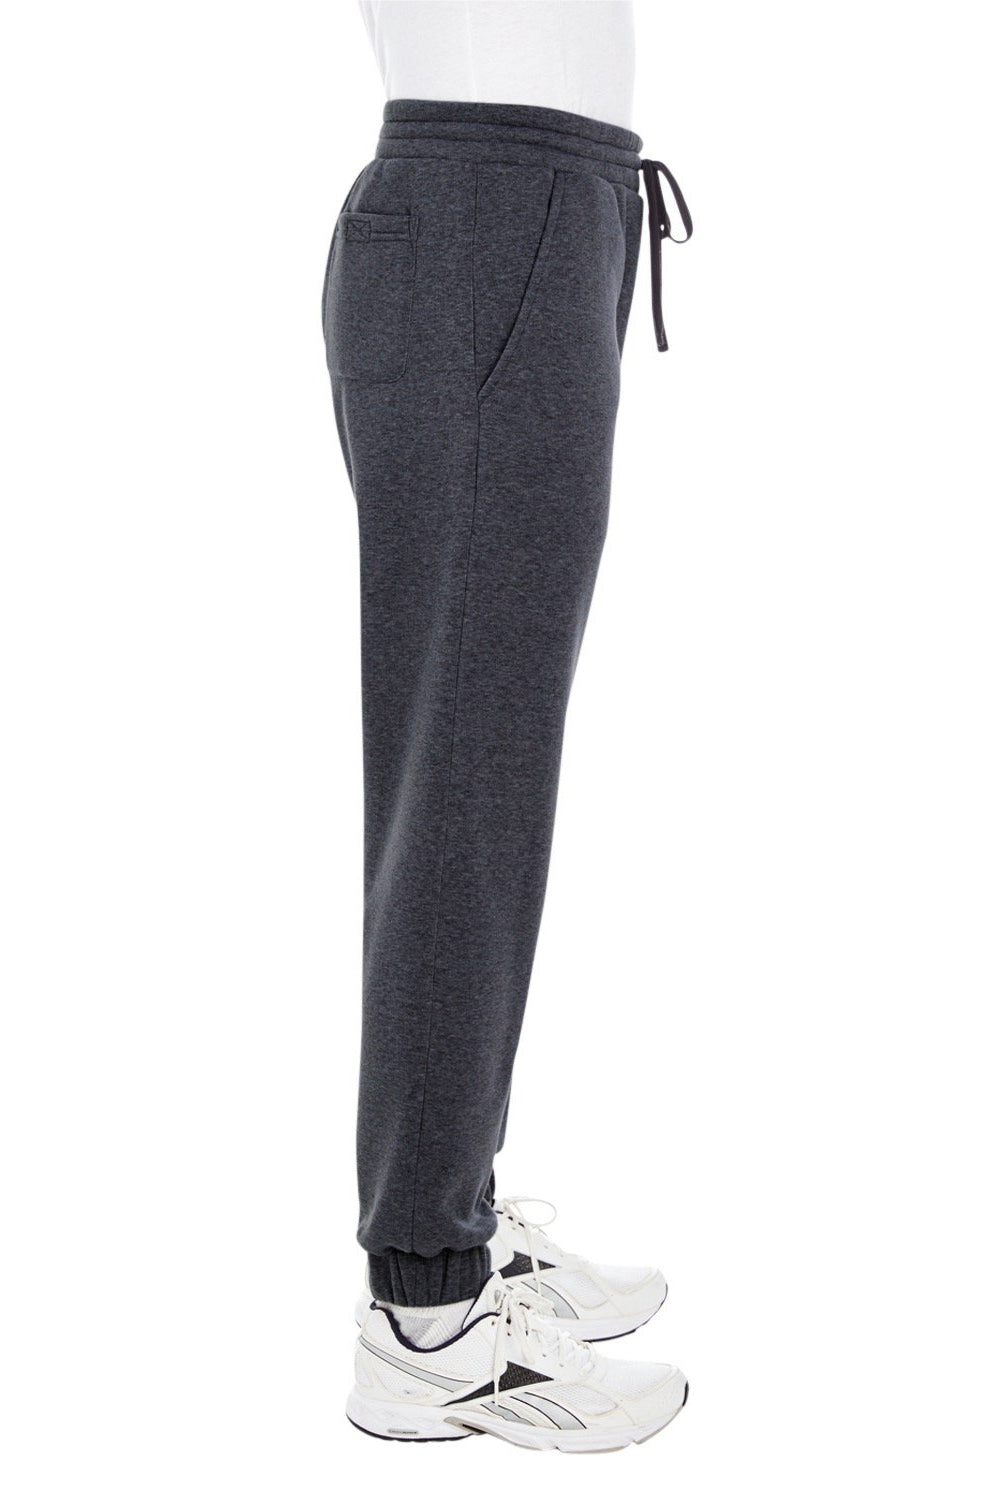 Burnside BU8800 Mens Fleece Jogger Sweatpants w/ Pockets Charcoal Grey Model Side